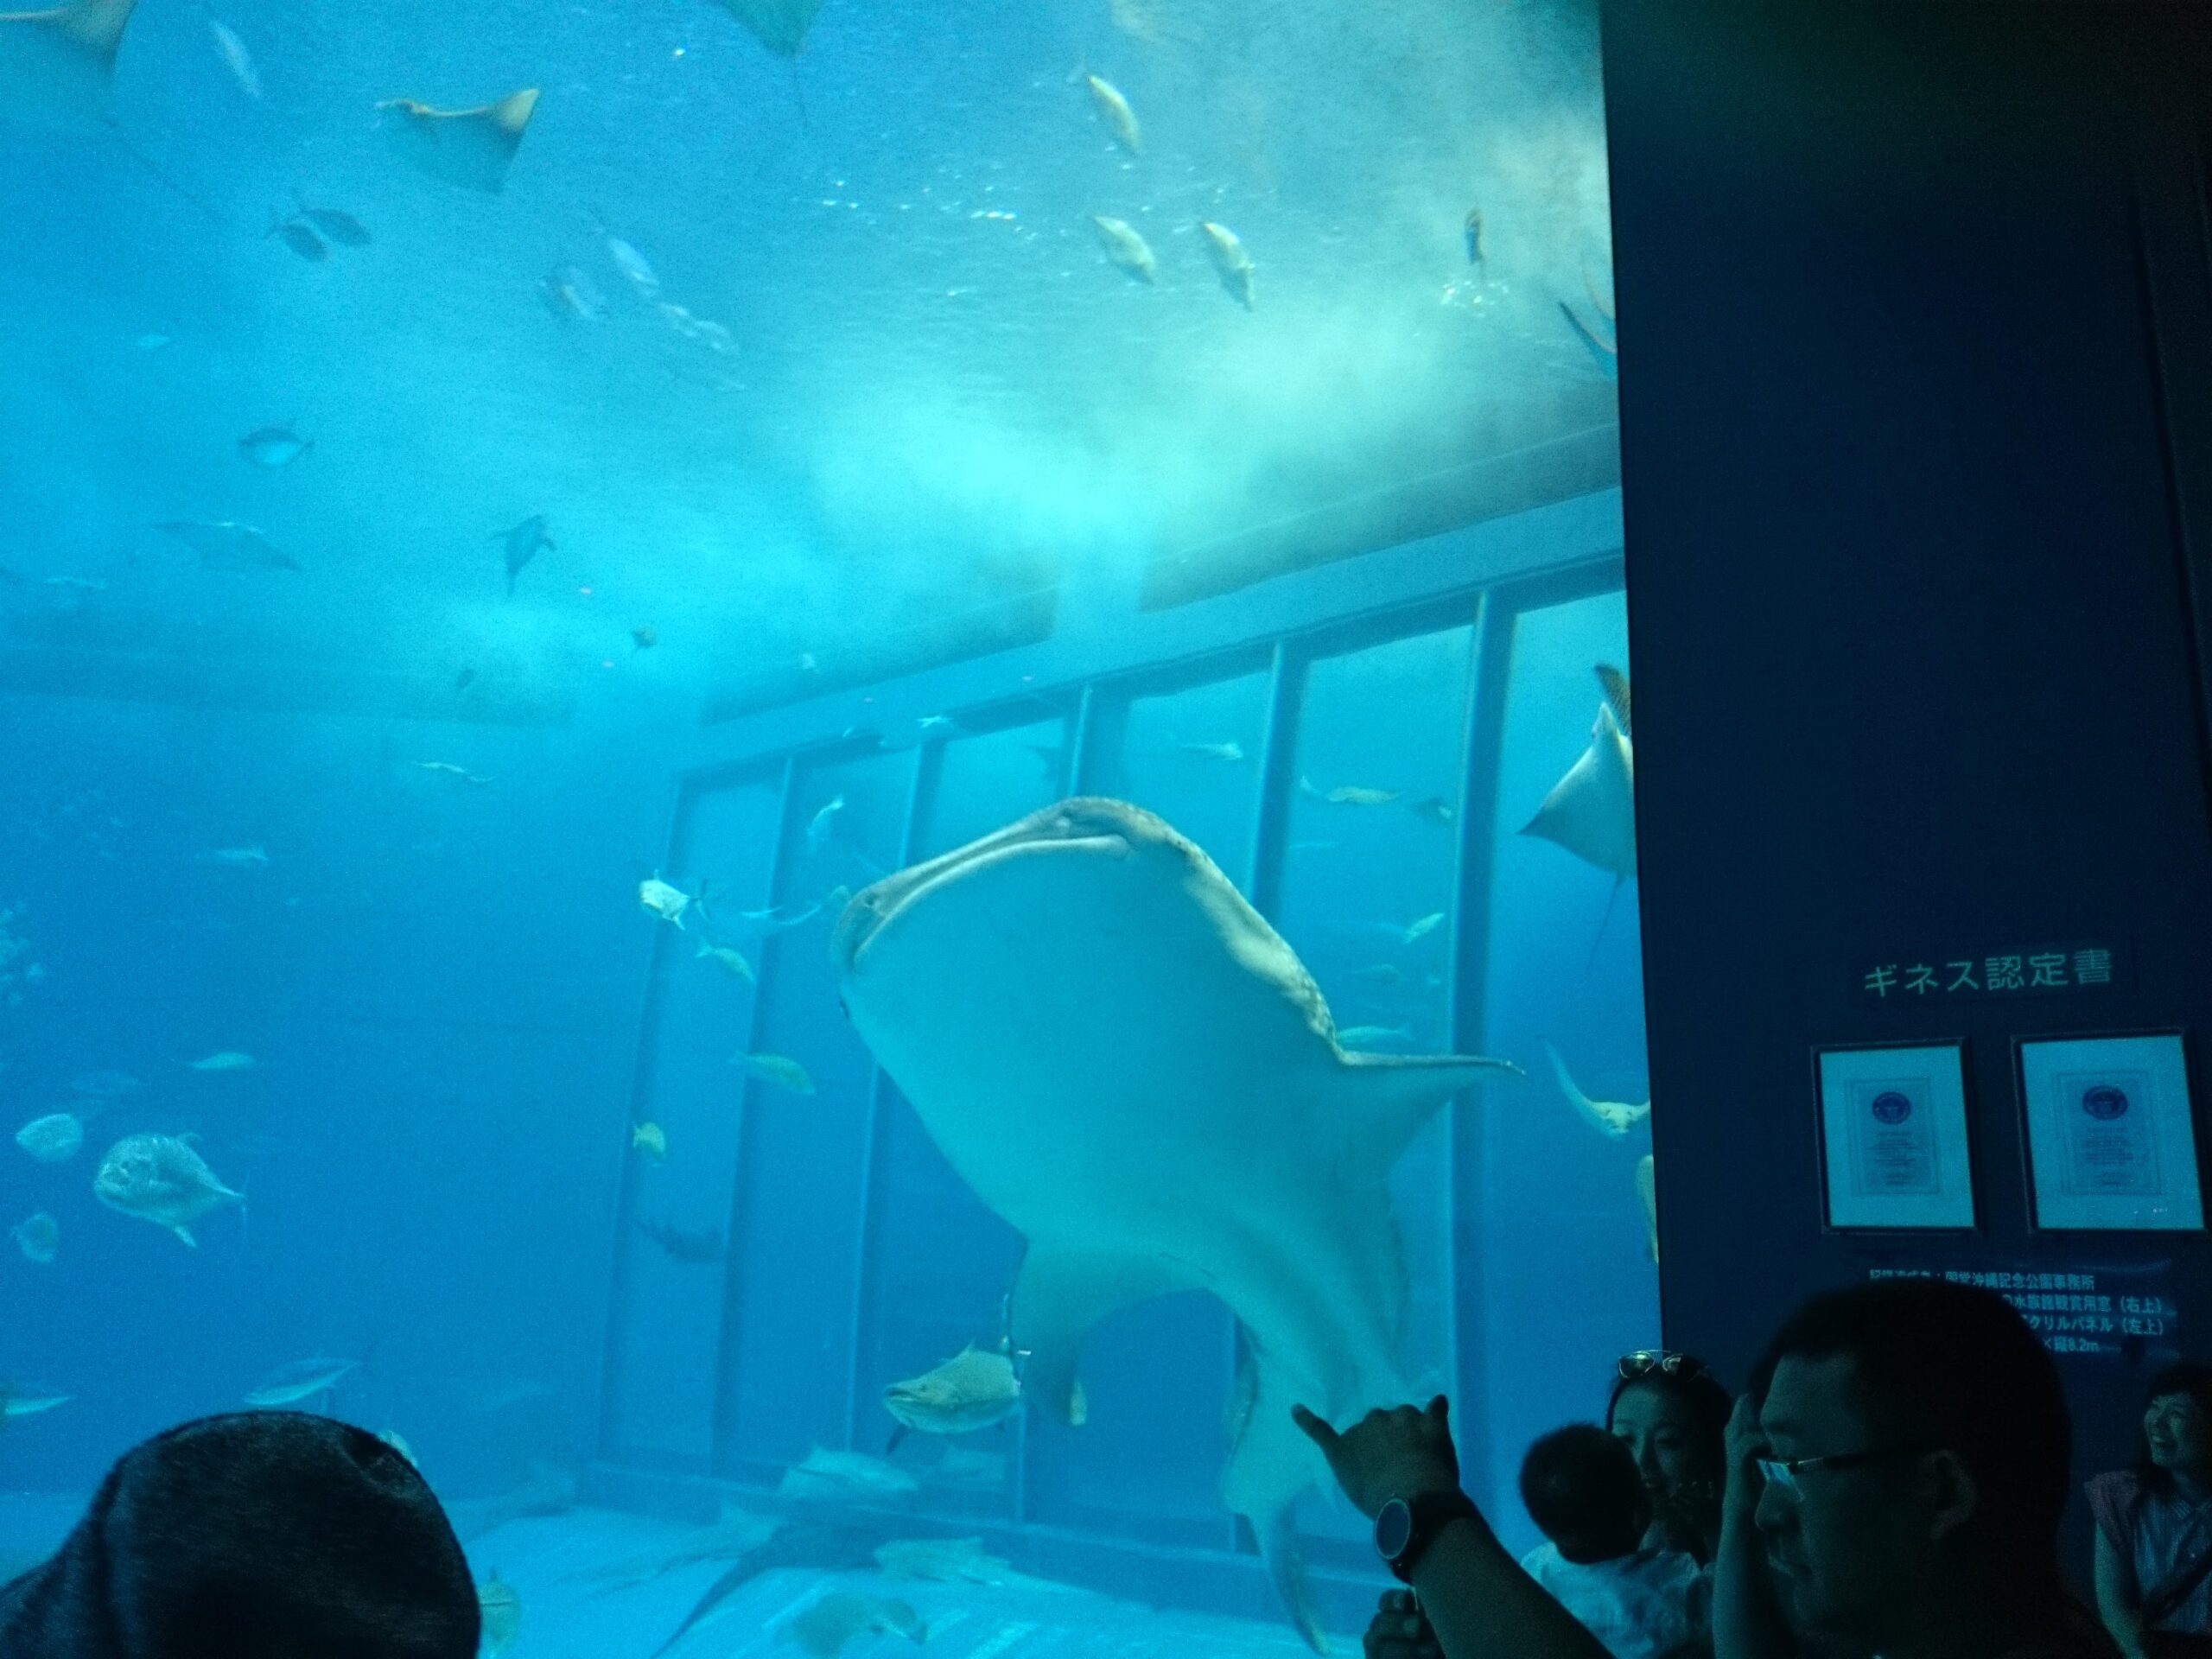 イルカと触れ合い・美ら海水族館・ハートロックと名所巡りの沖縄二日目